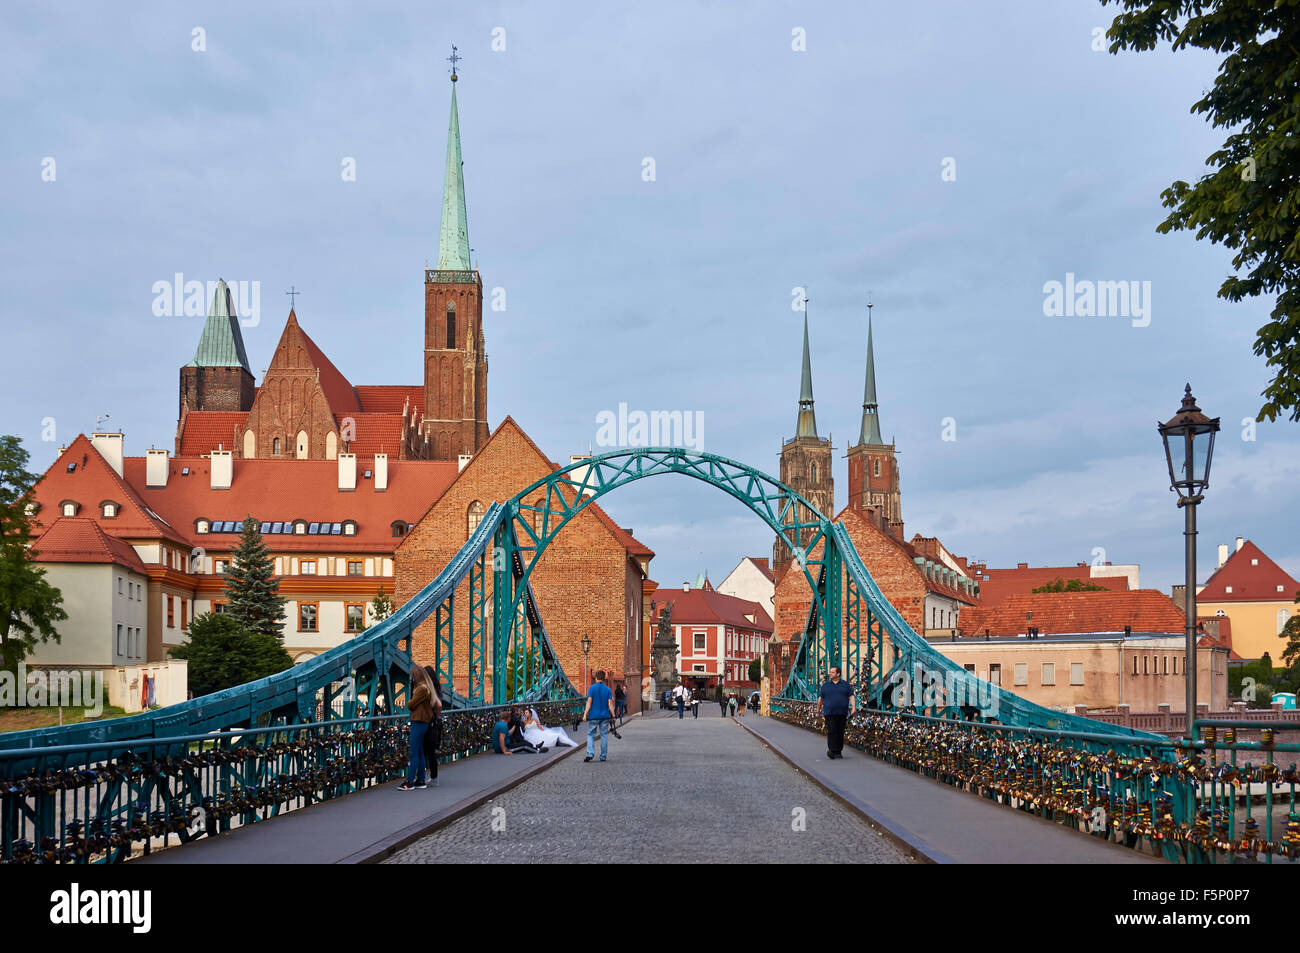 Tumski, pont reliant l'île de Sable et de la vieille ville de Wroclaw avec l'île de la cathédrale ou Ostrow Tumski , Pologne, Europe Banque D'Images